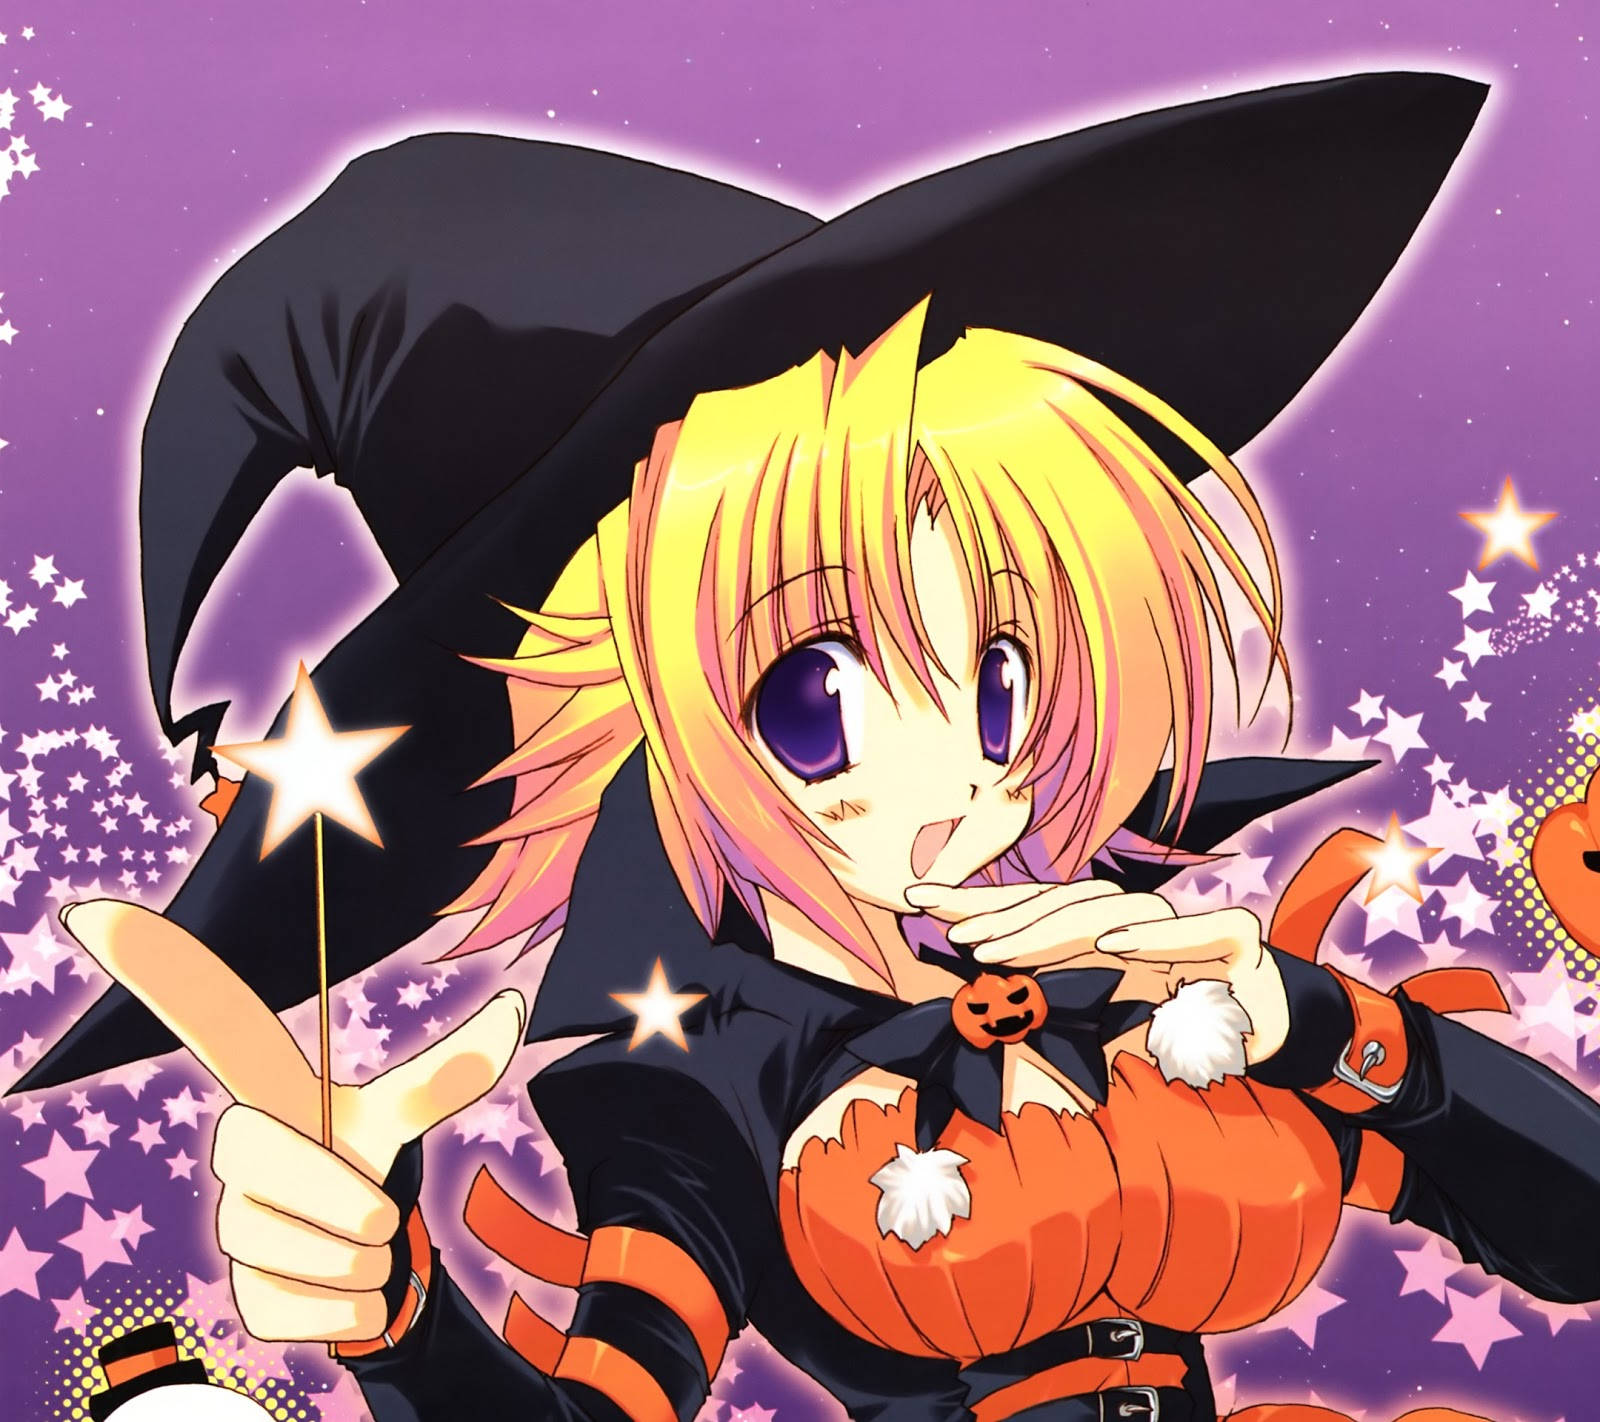 Juntese À Diversão Assustadora E Explore O Lado Sombrio Do Anime Neste Halloween! Papel de Parede